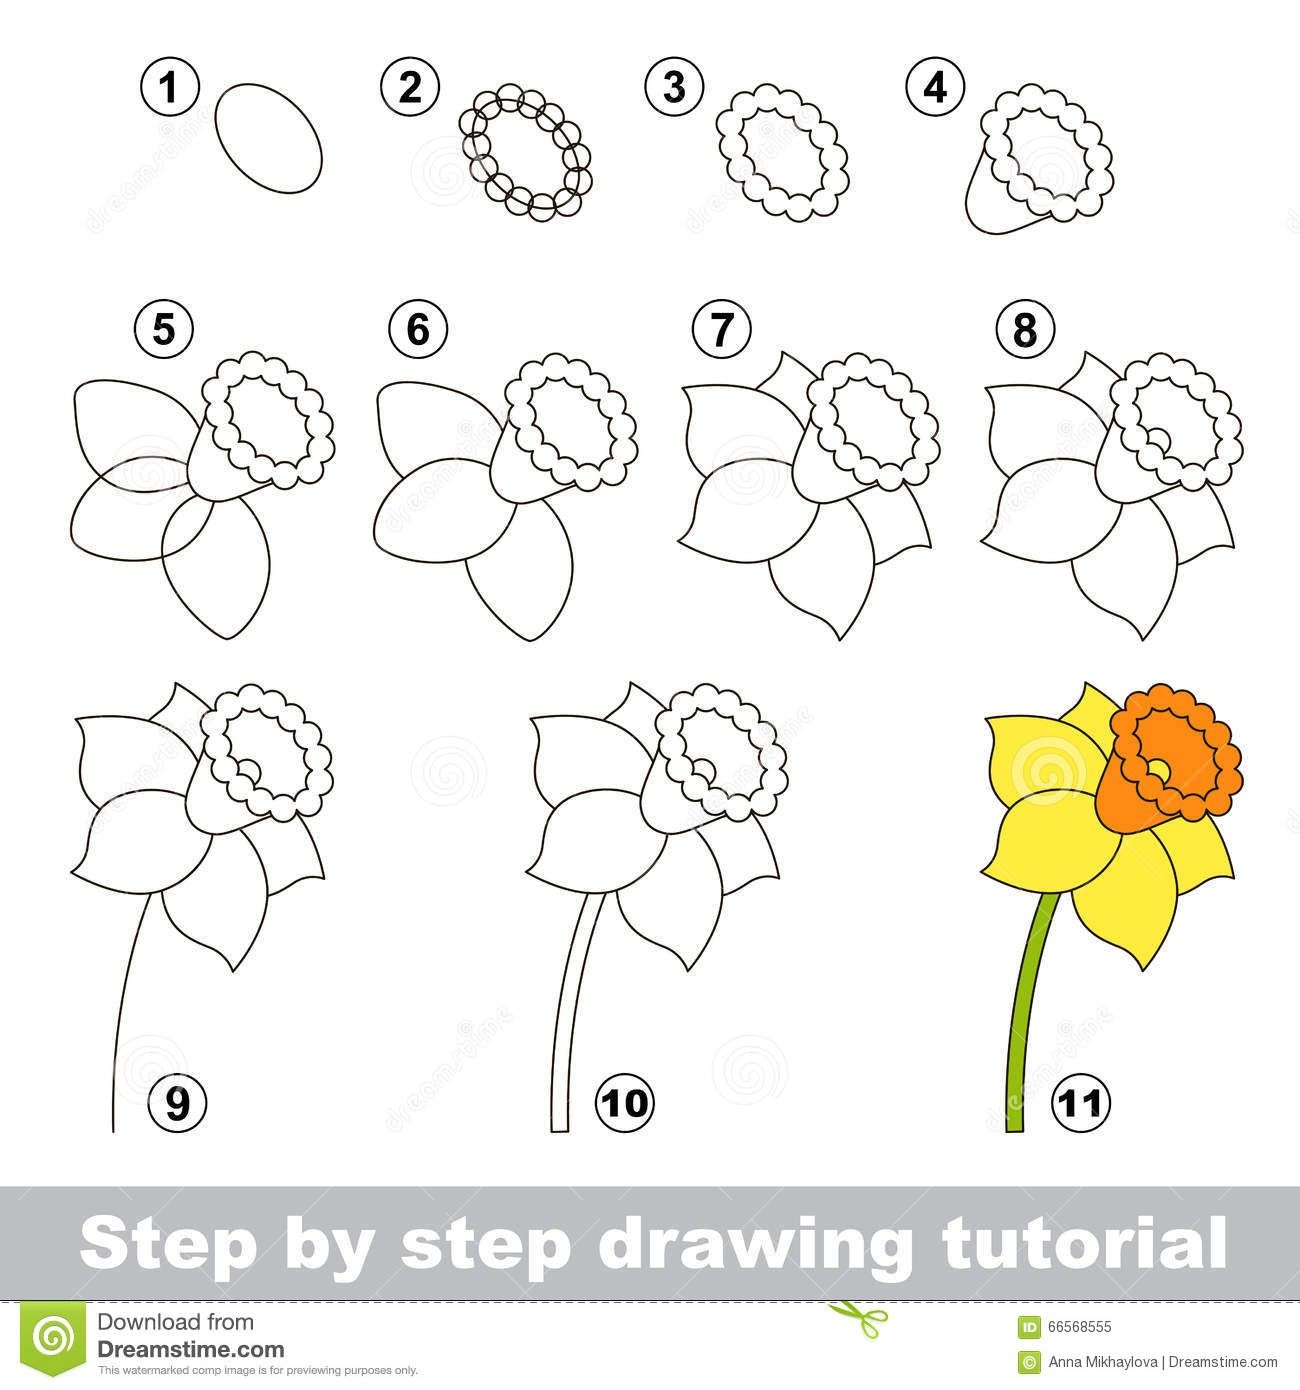 Как научить ребенка рисовать в любом возрасте